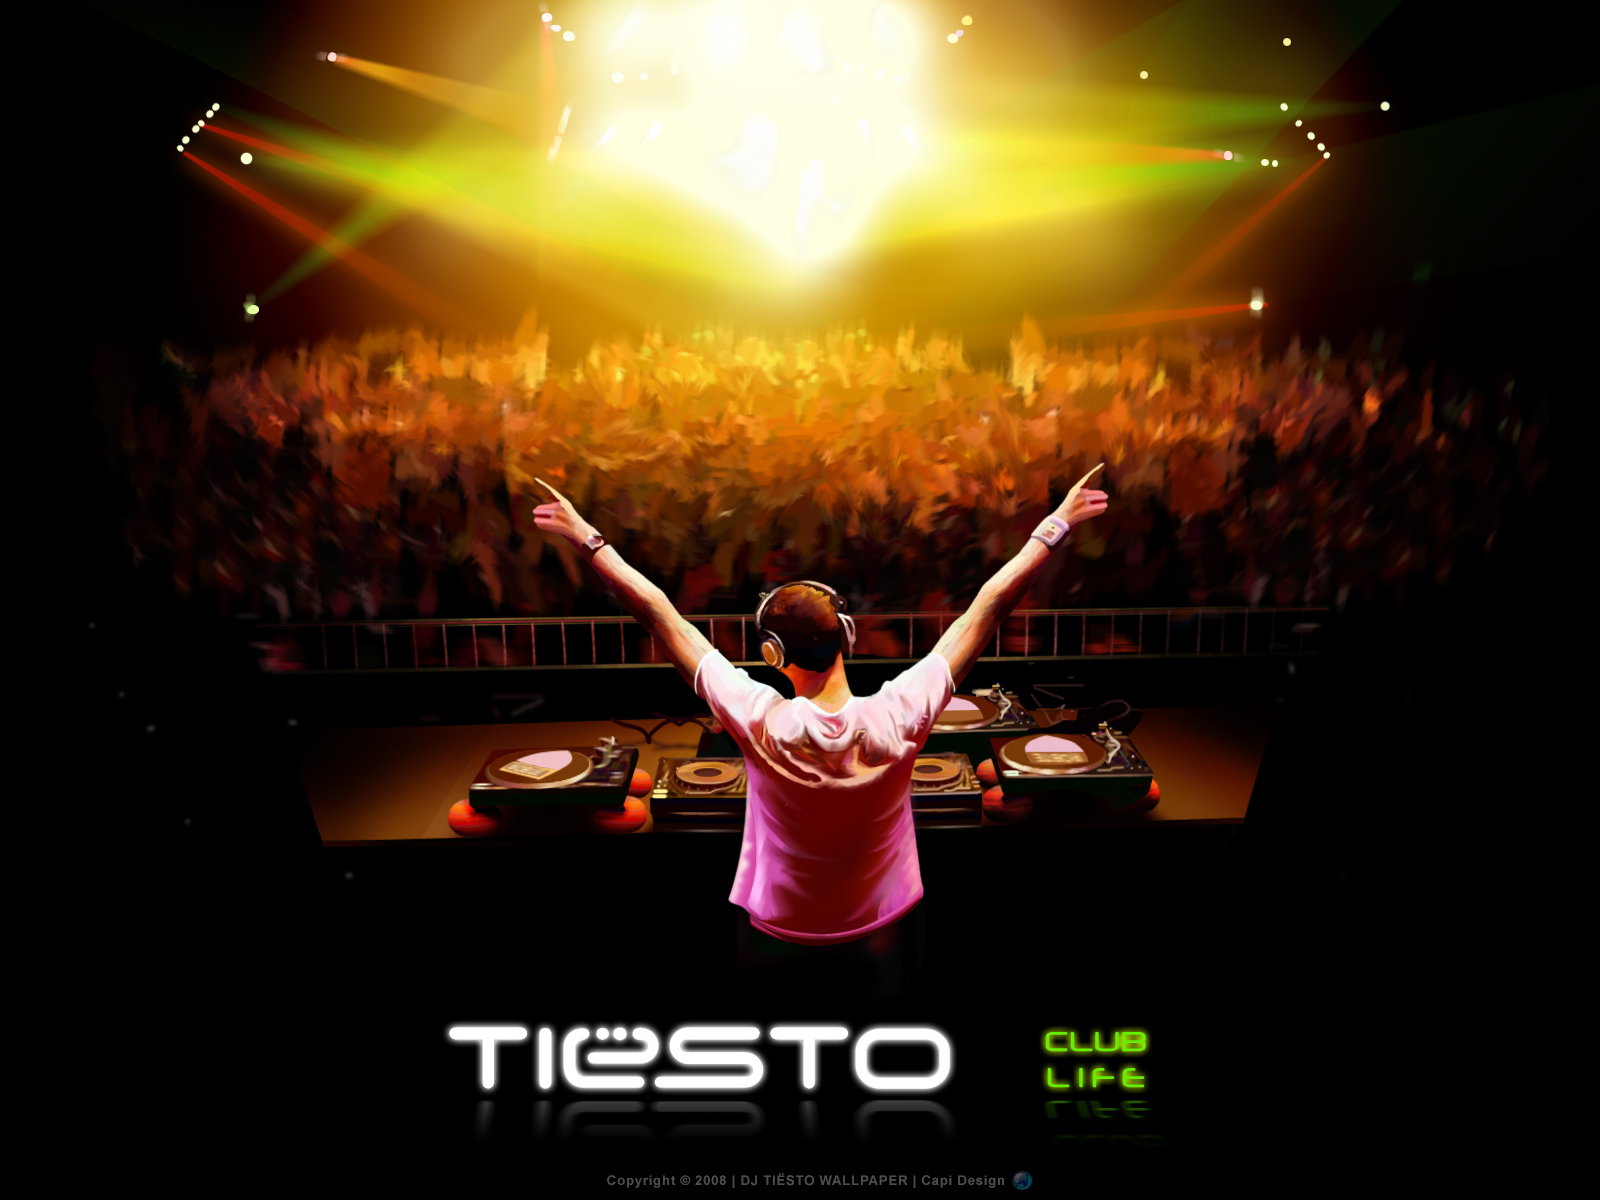 Free DJ Tiesto Wallpapers Free DJ Tiesto HD Wallpapers DJ Tiesto